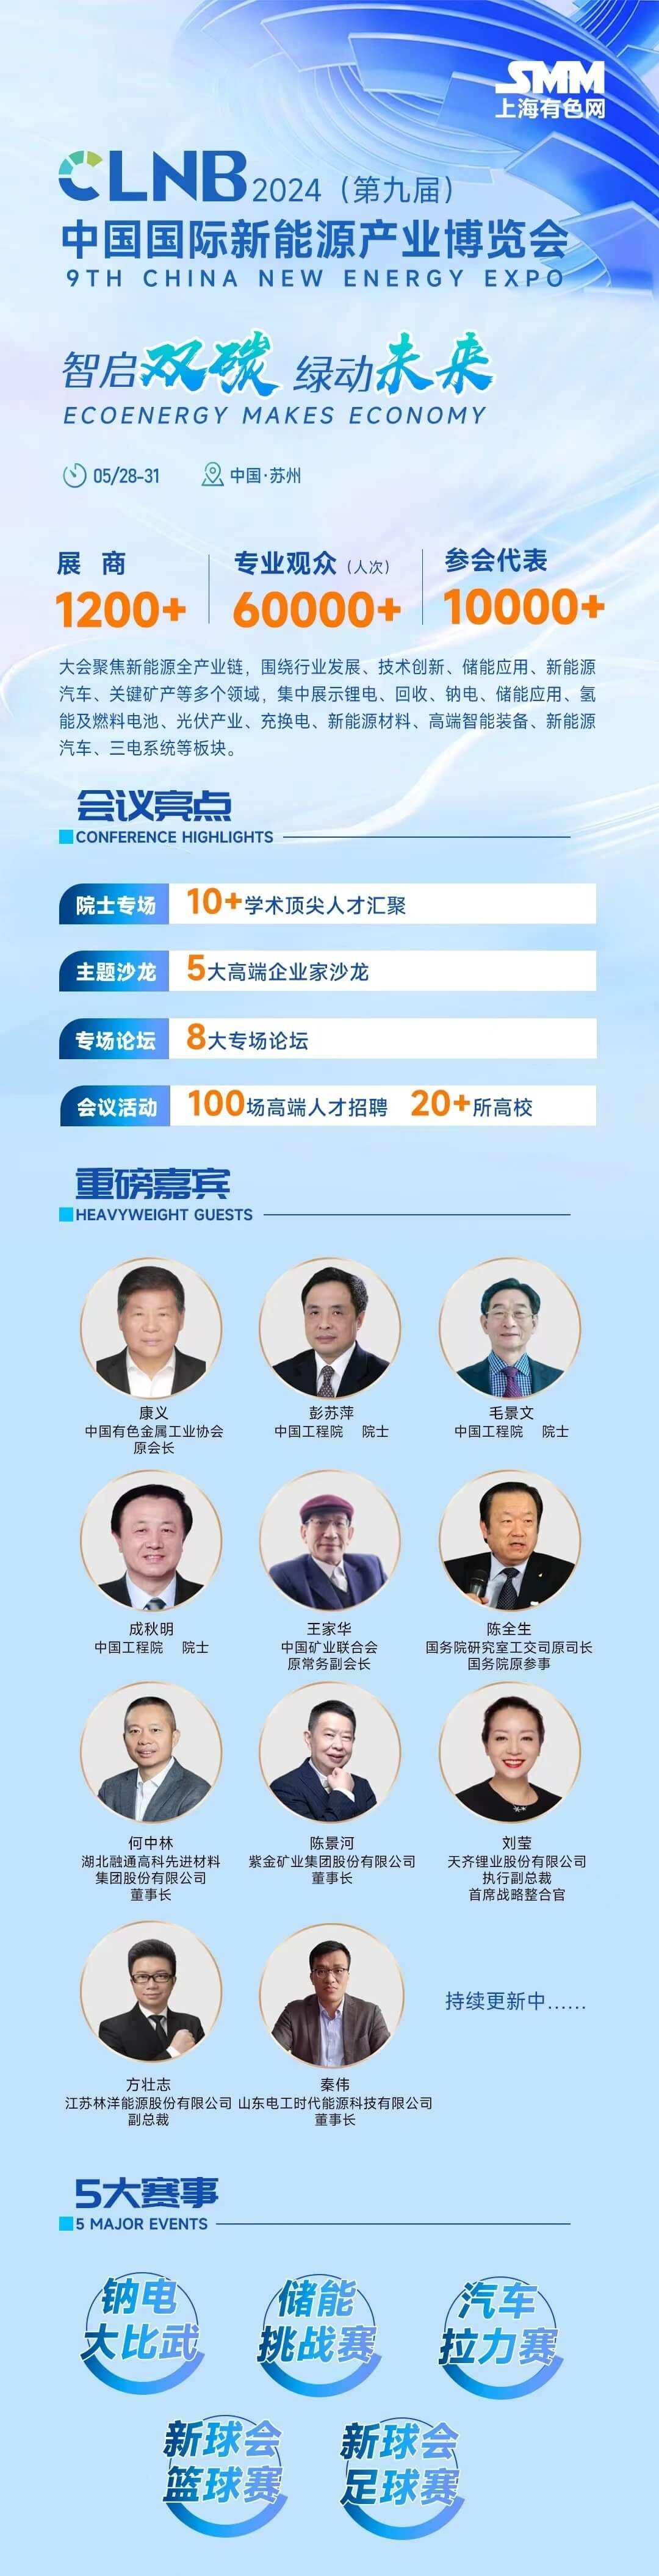 CLNB2024（第九届）中国国际新能源大会暨产业博览会